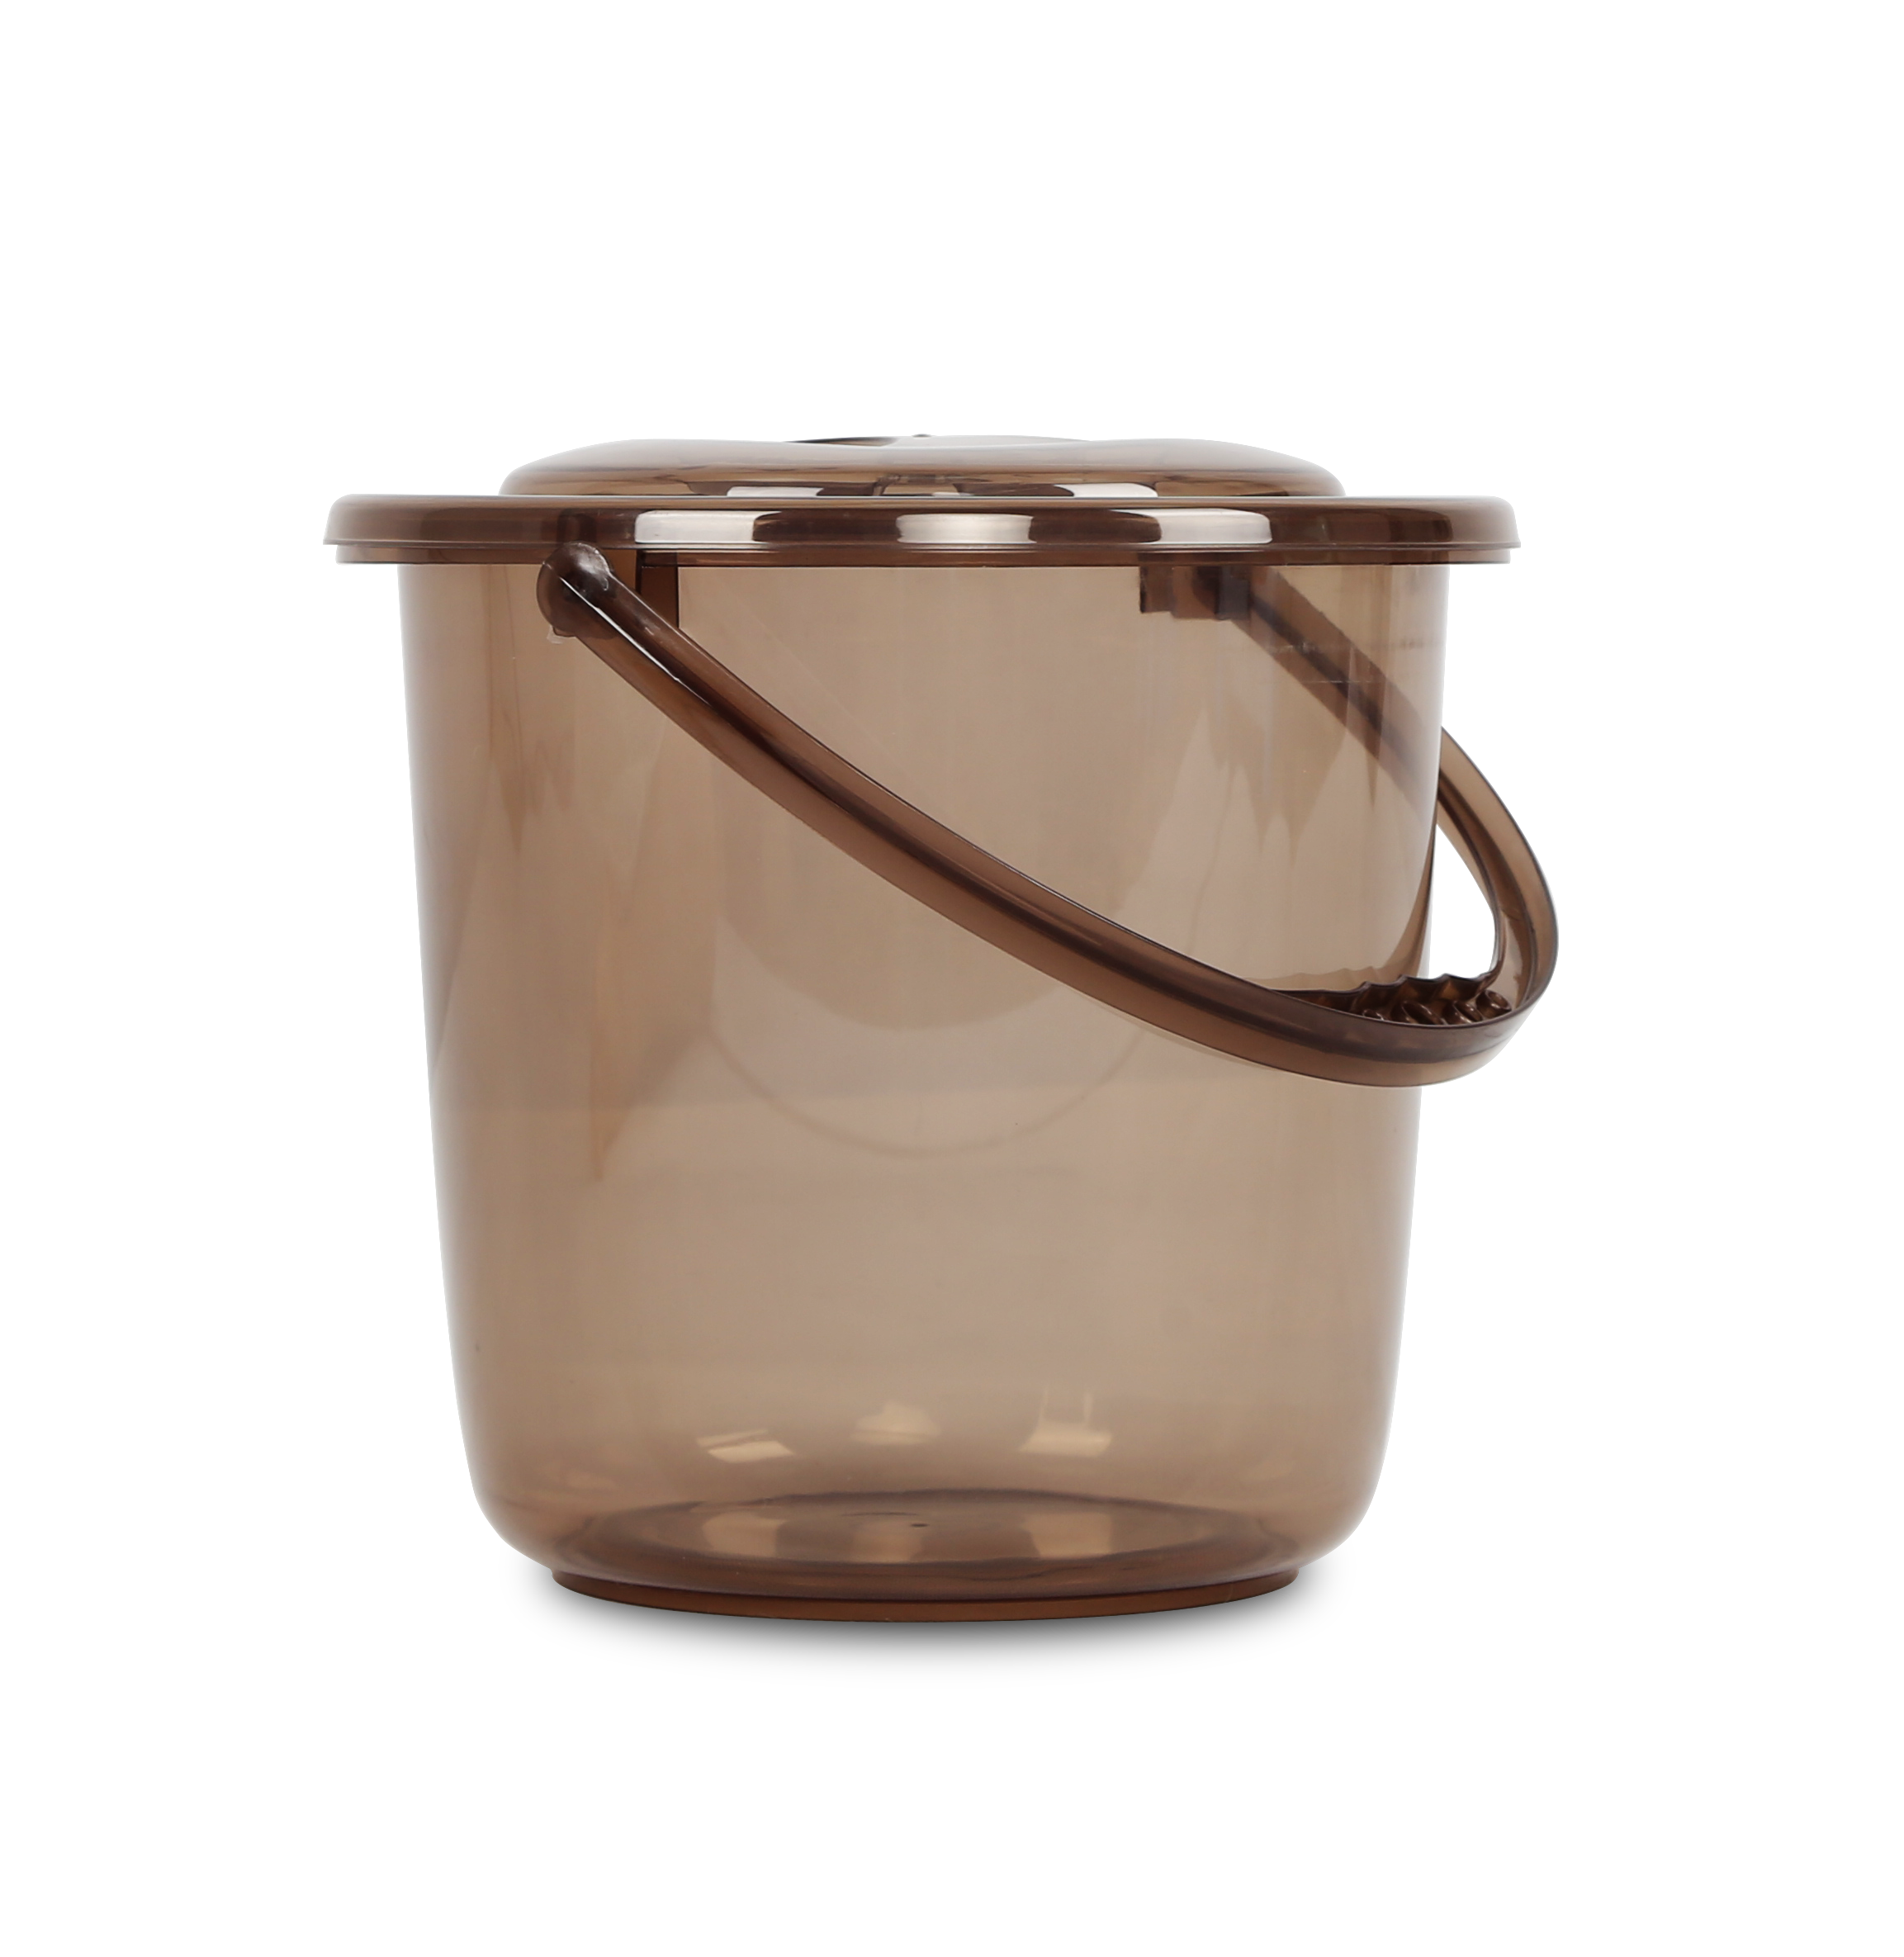 塑料水桶带盖大小号透明桶洗衣桶手提洗车桶